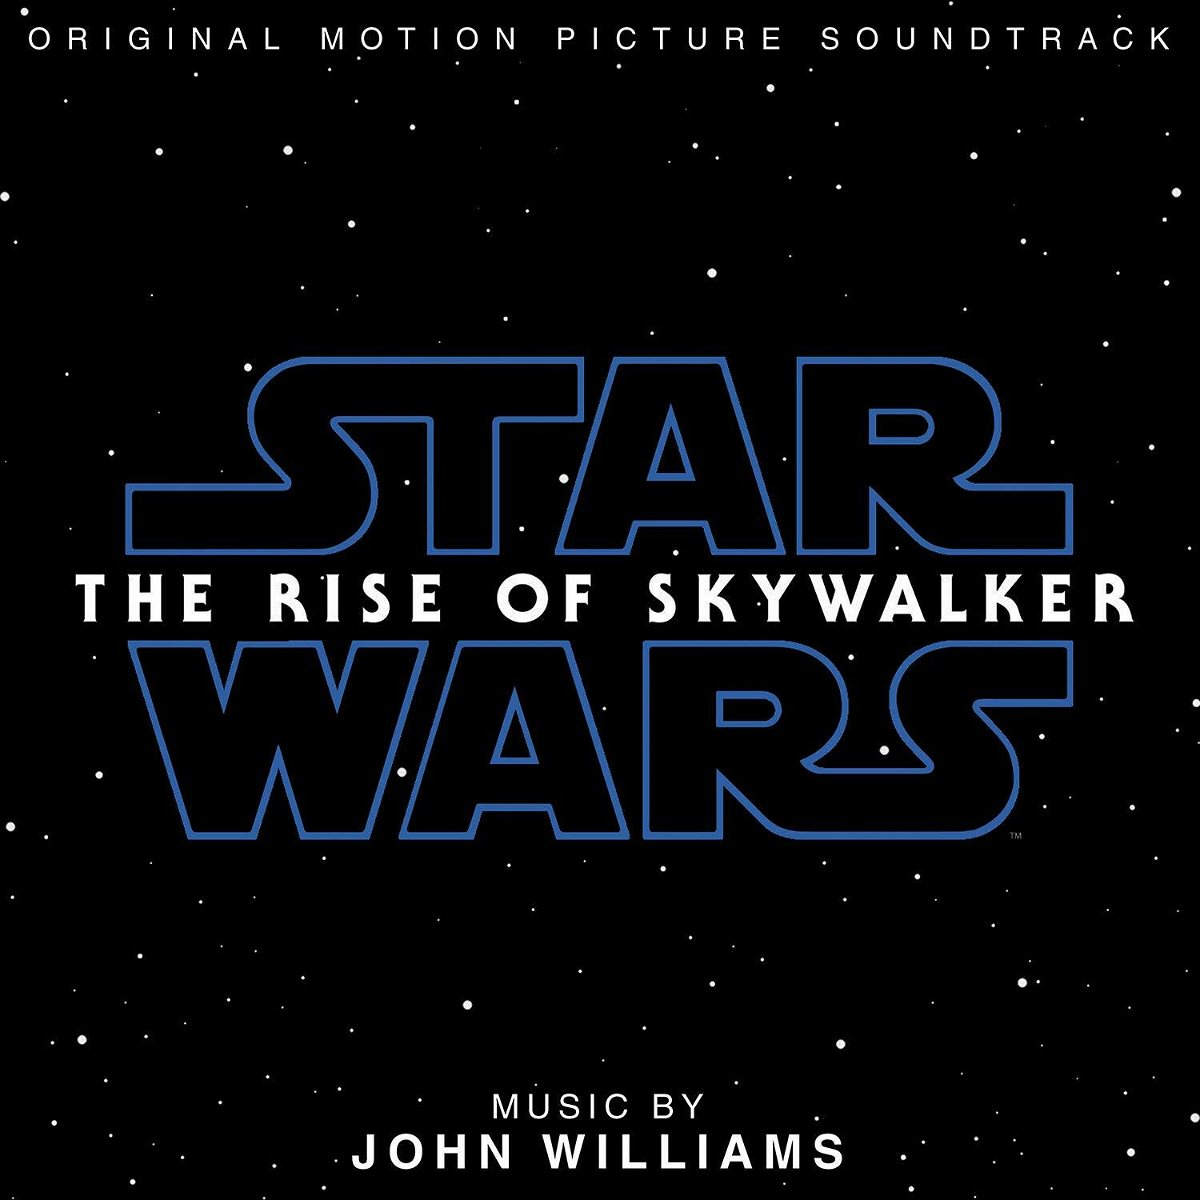 La copertina della colonna sonora di Star Wars: L'ascesa di Skywalker